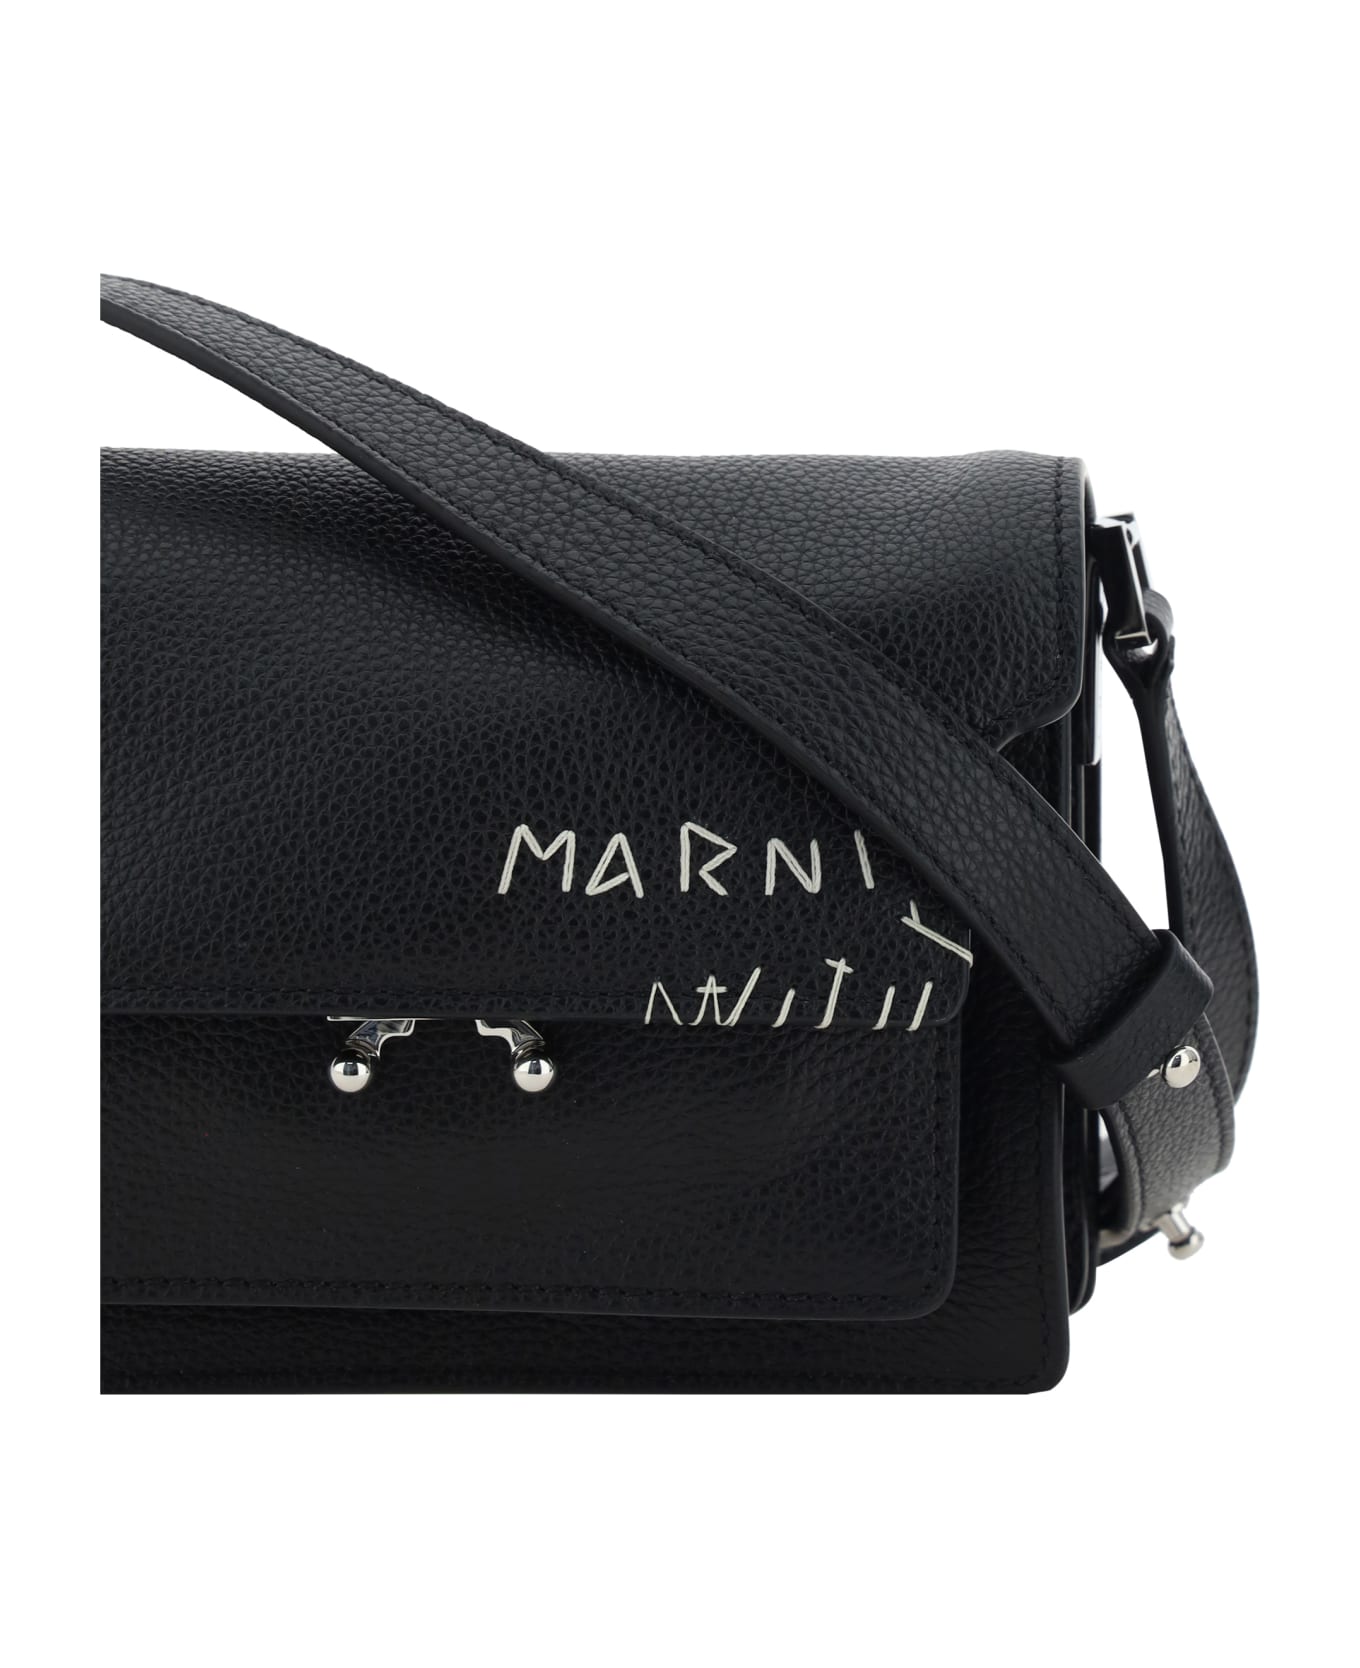 Marni Trunk Shoulder Bag - Black